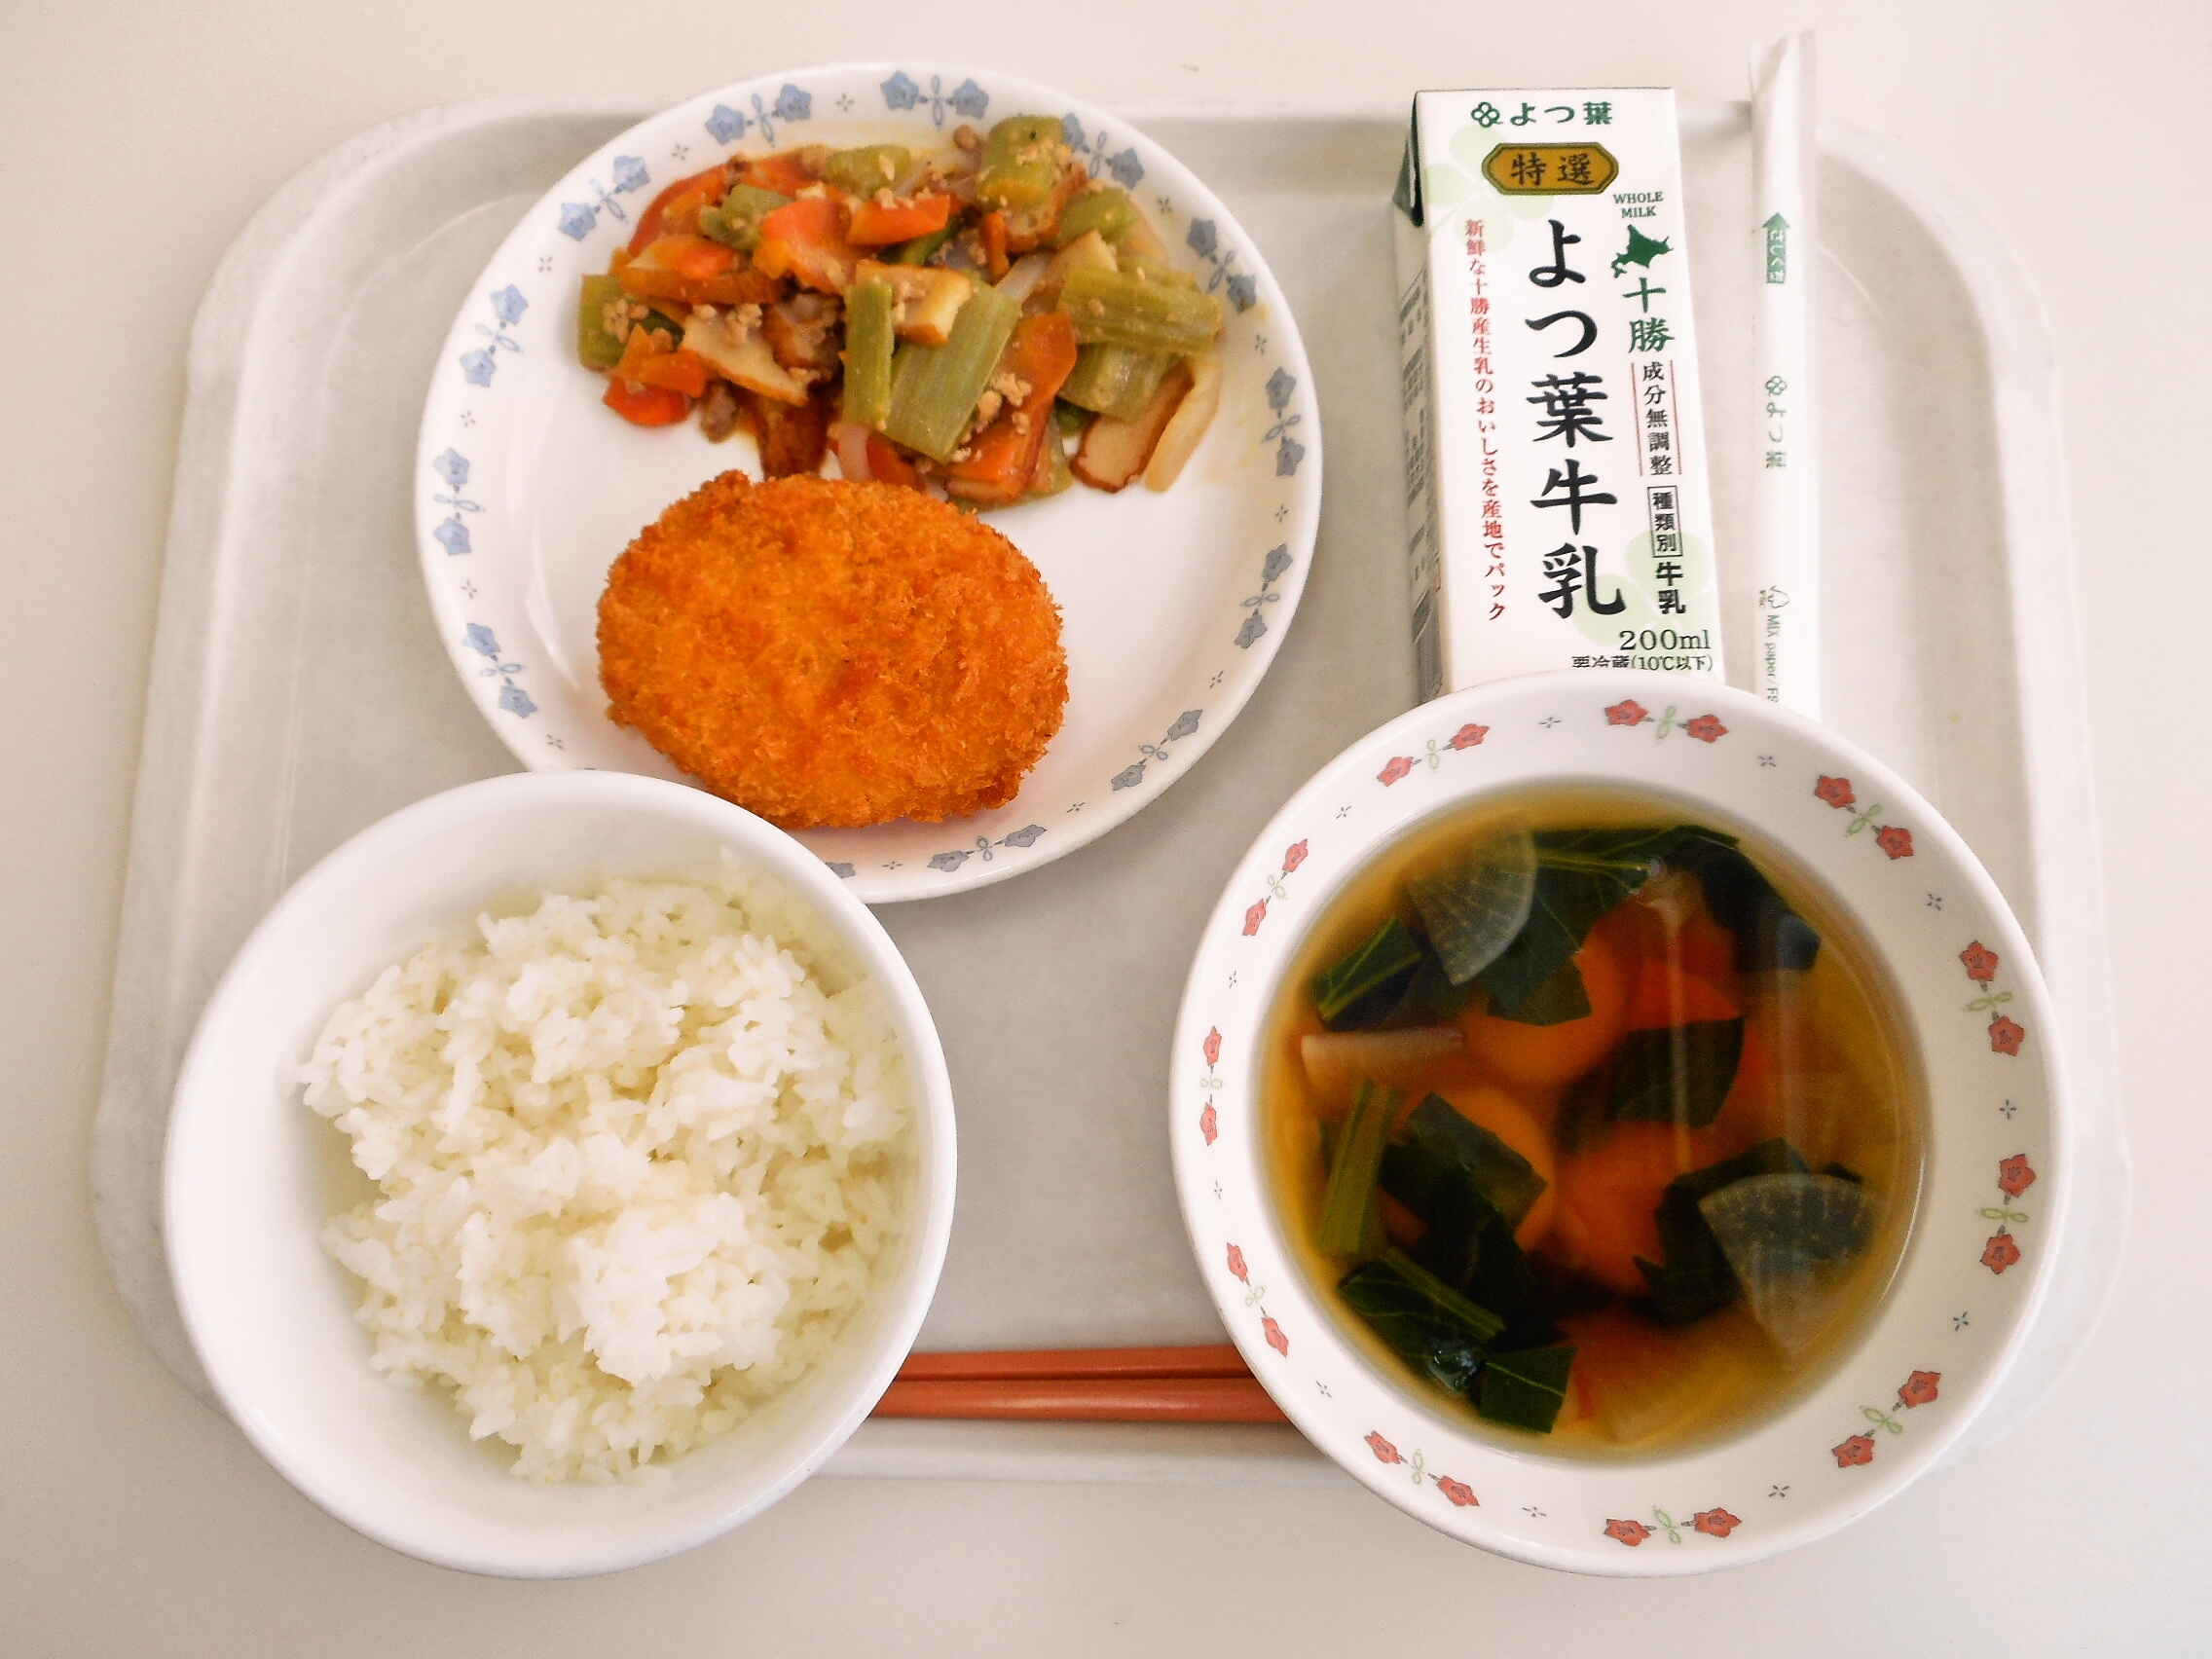 ごはん、かぼちゃ団子、士幌の野菜コロッケ、ふきの味噌炒め、牛乳